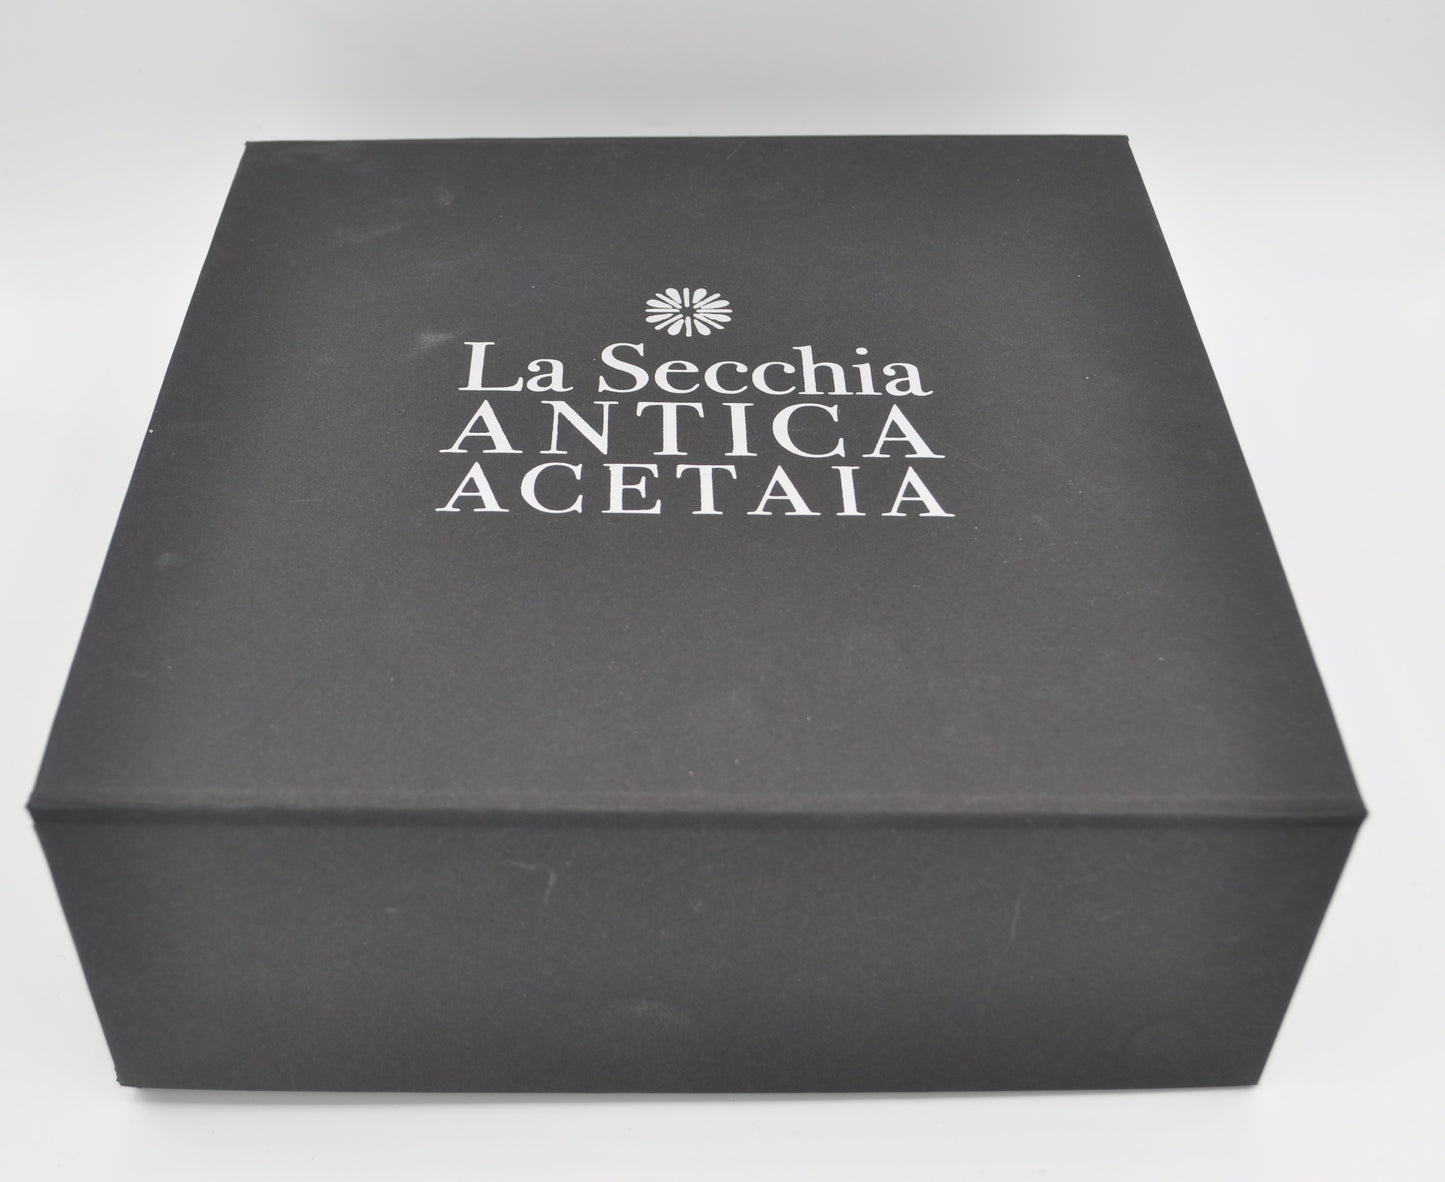 Box 1 - Balsamessig aus Modena IGP 3 und 4 Sterne mit Parmesan